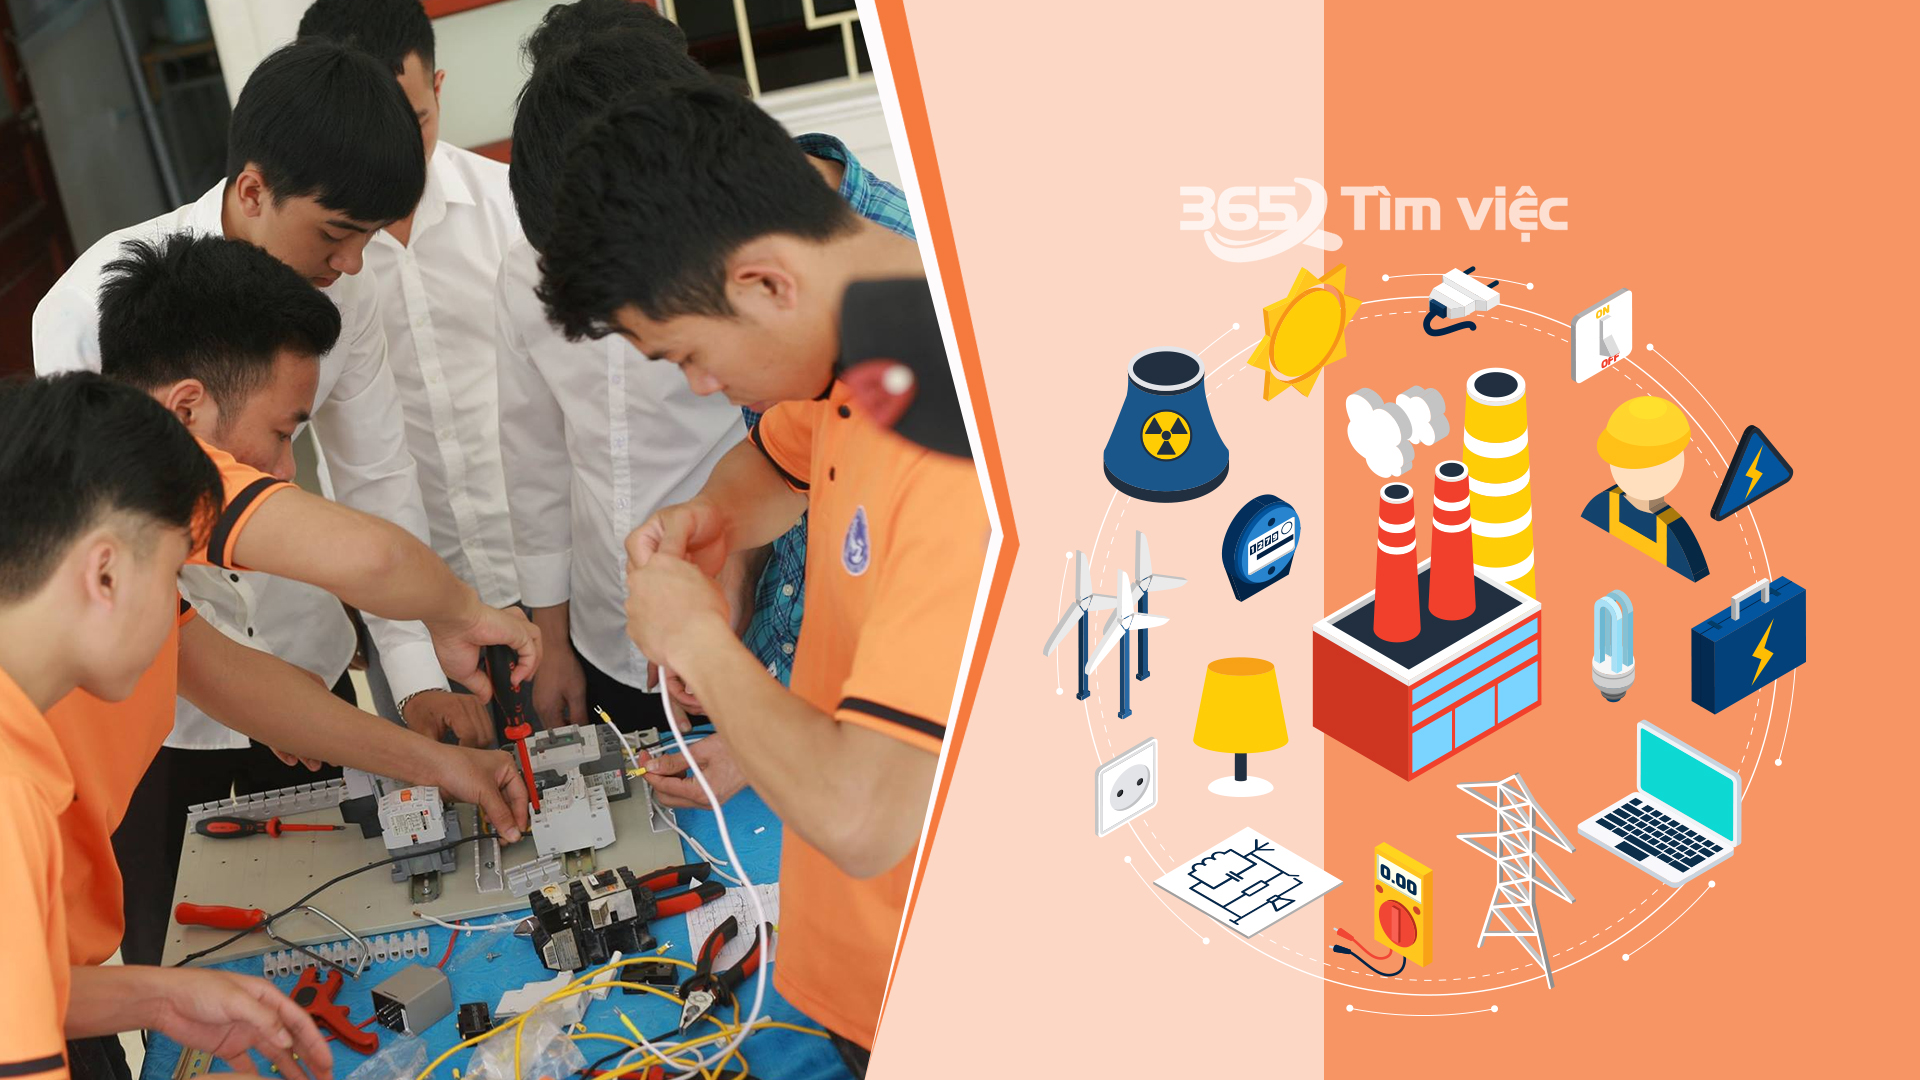 Cơ hội phát triển cho việc làm ngành Điện - Điện tử tại Tây Ninh